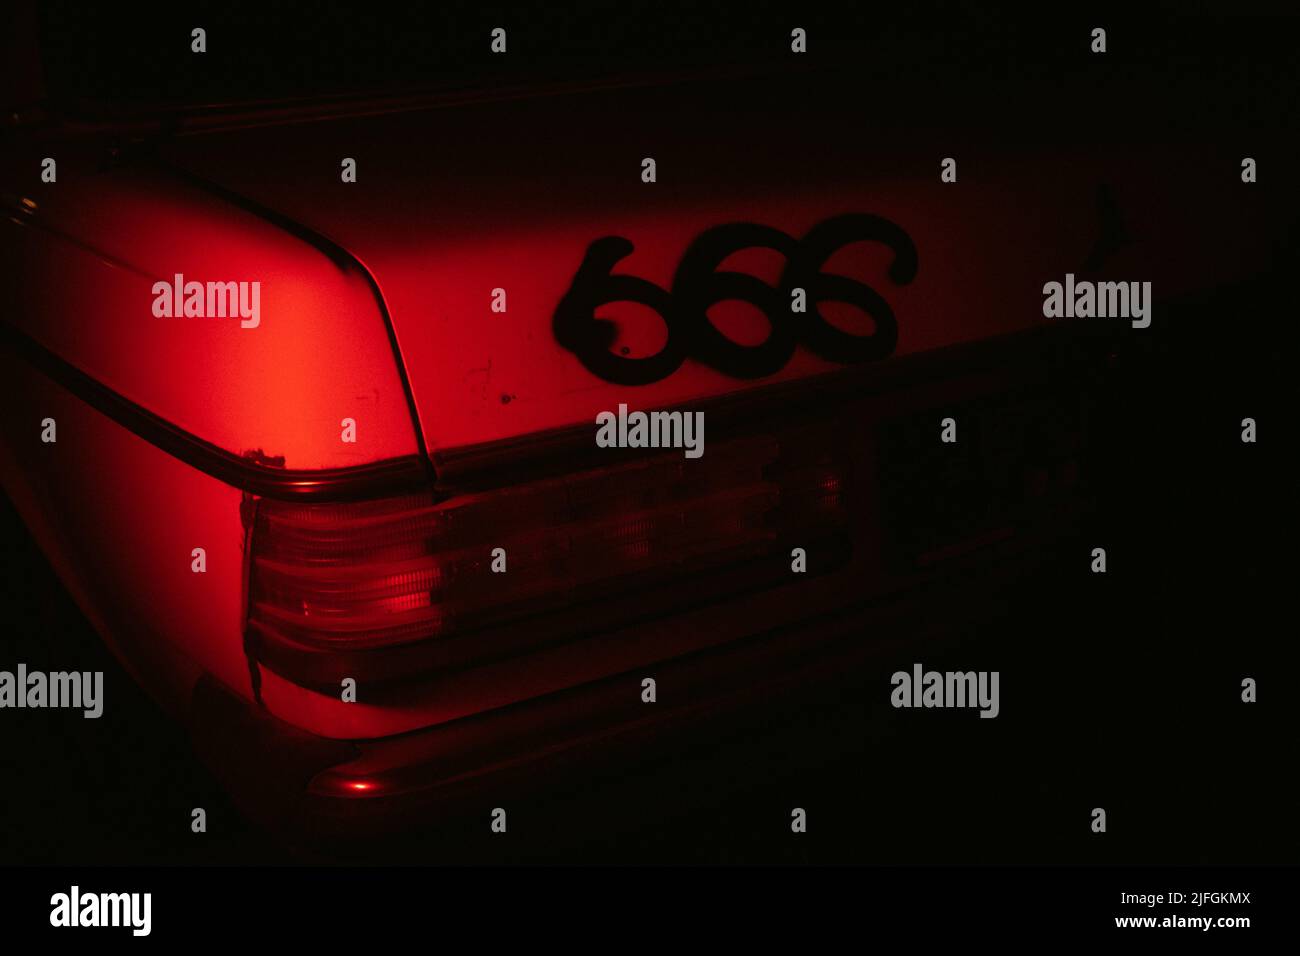 Une photo cinématographique rouge d'une voiture d'époque avec 666 pulvérisé sur le coffre. Banque D'Images